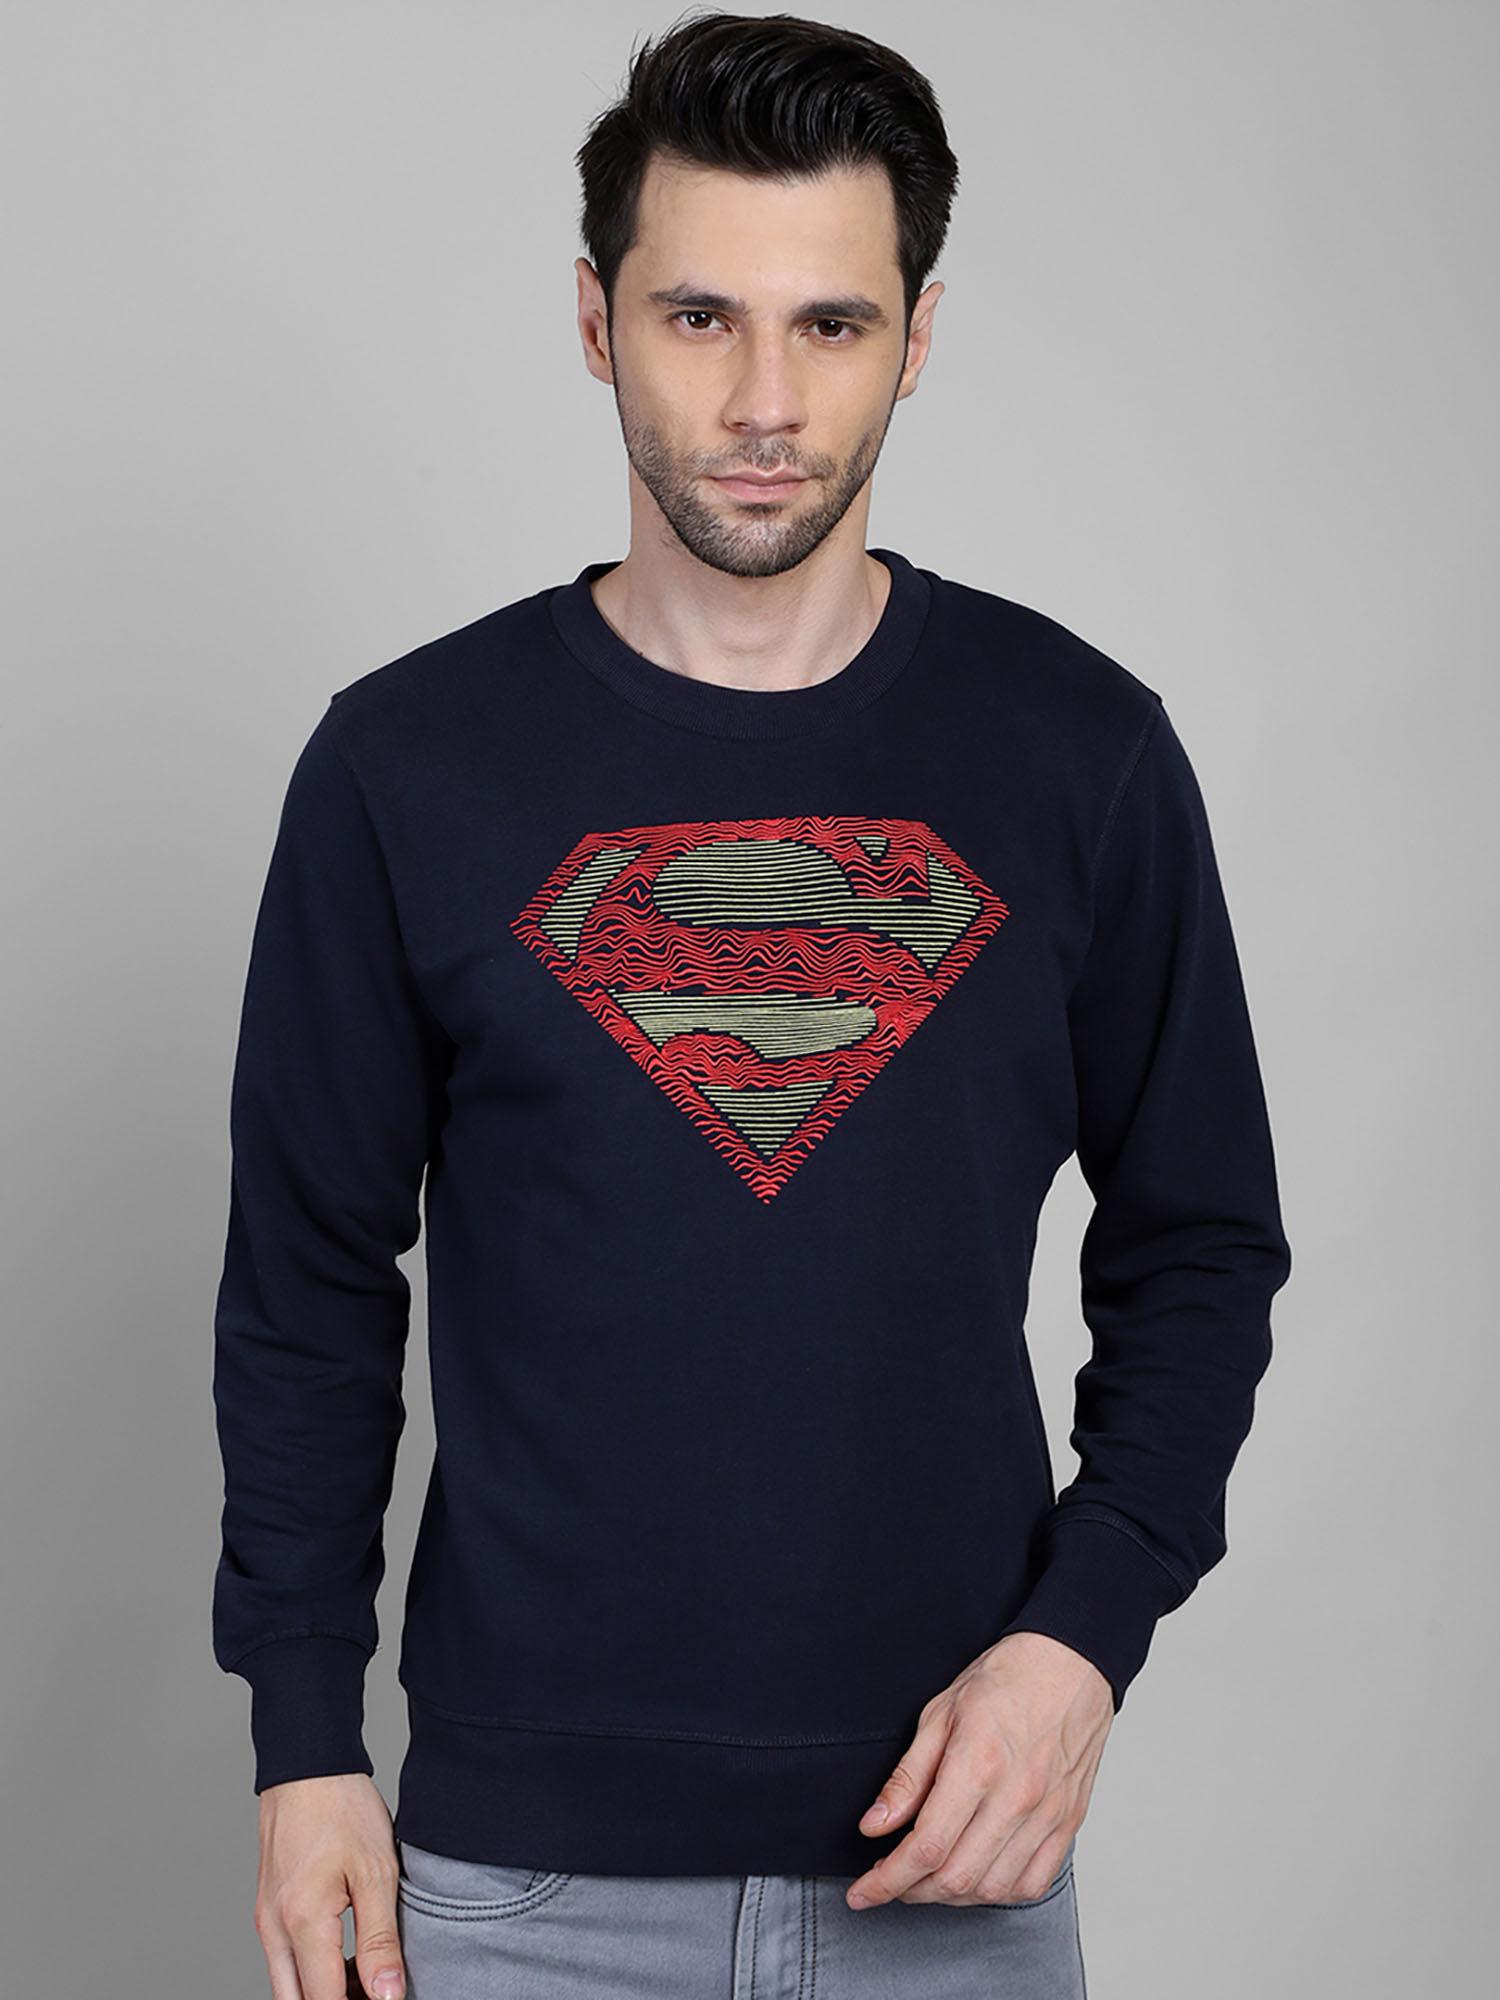 superman-featured-sweatshirt-for-men